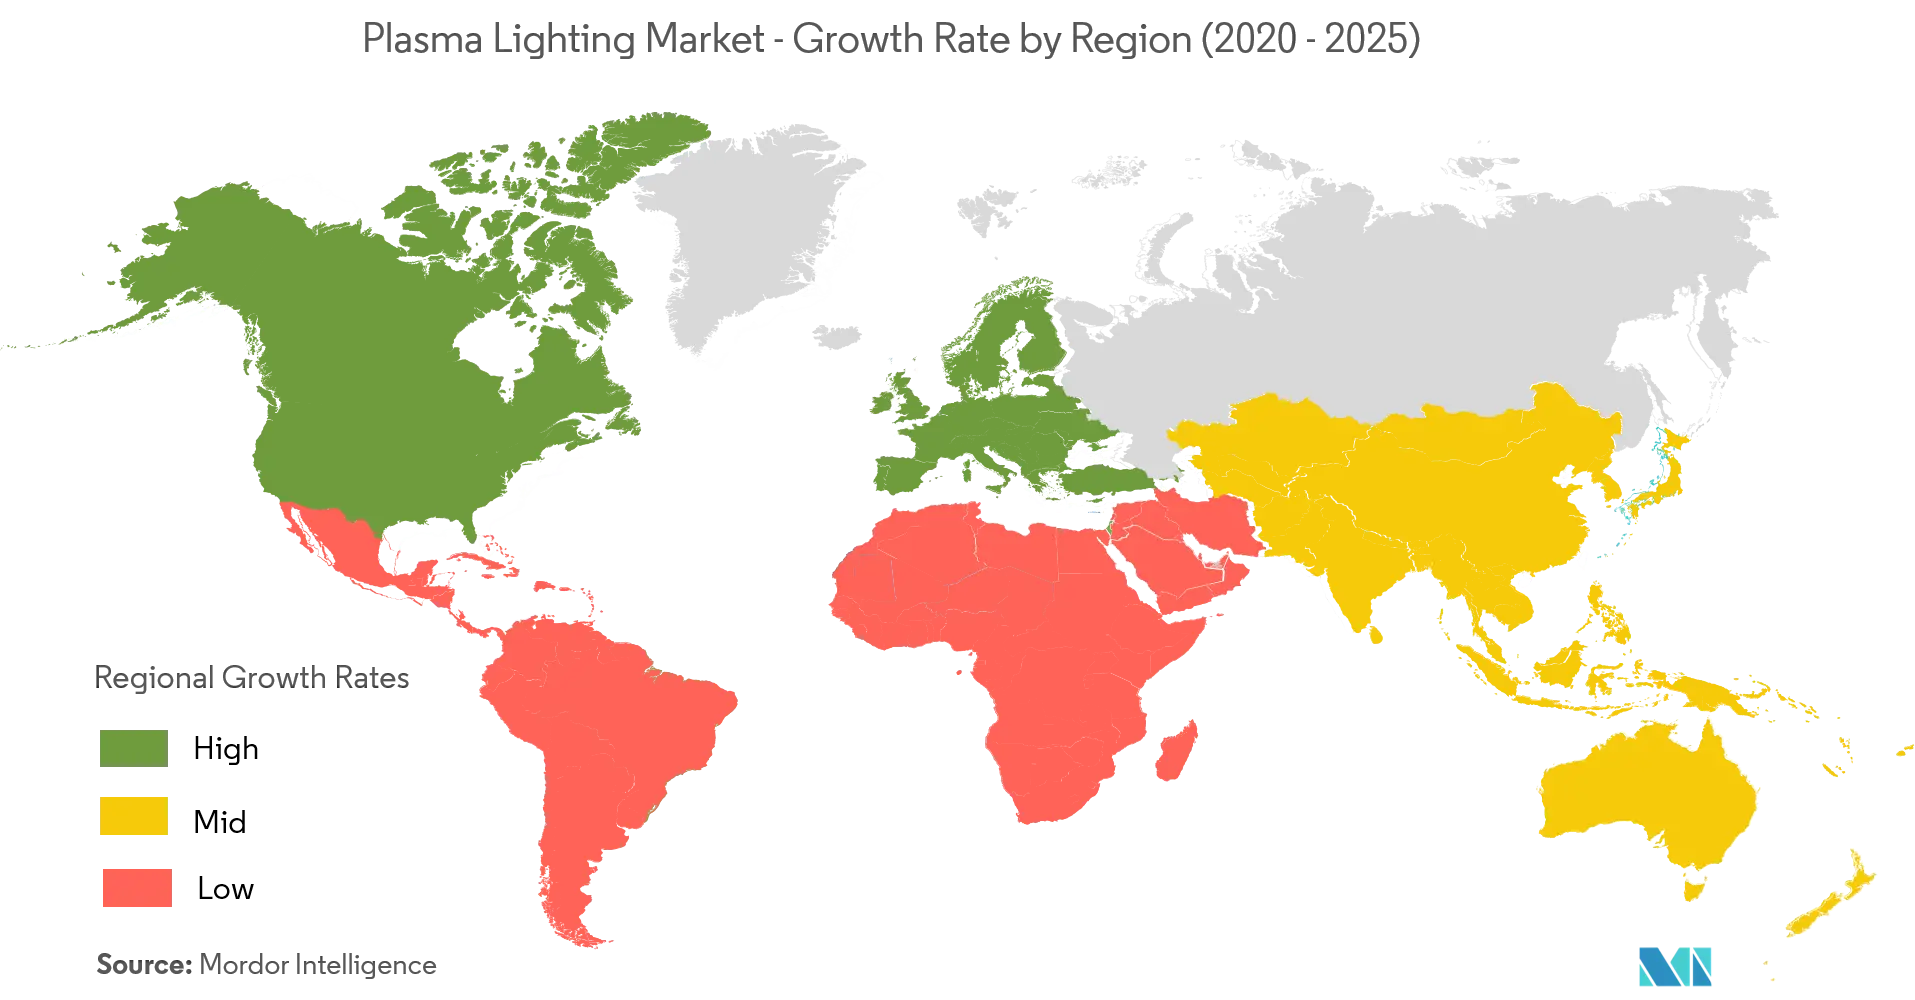 Рынок плазменного освещения - темпы роста по регионам (2020-2025 гг.)